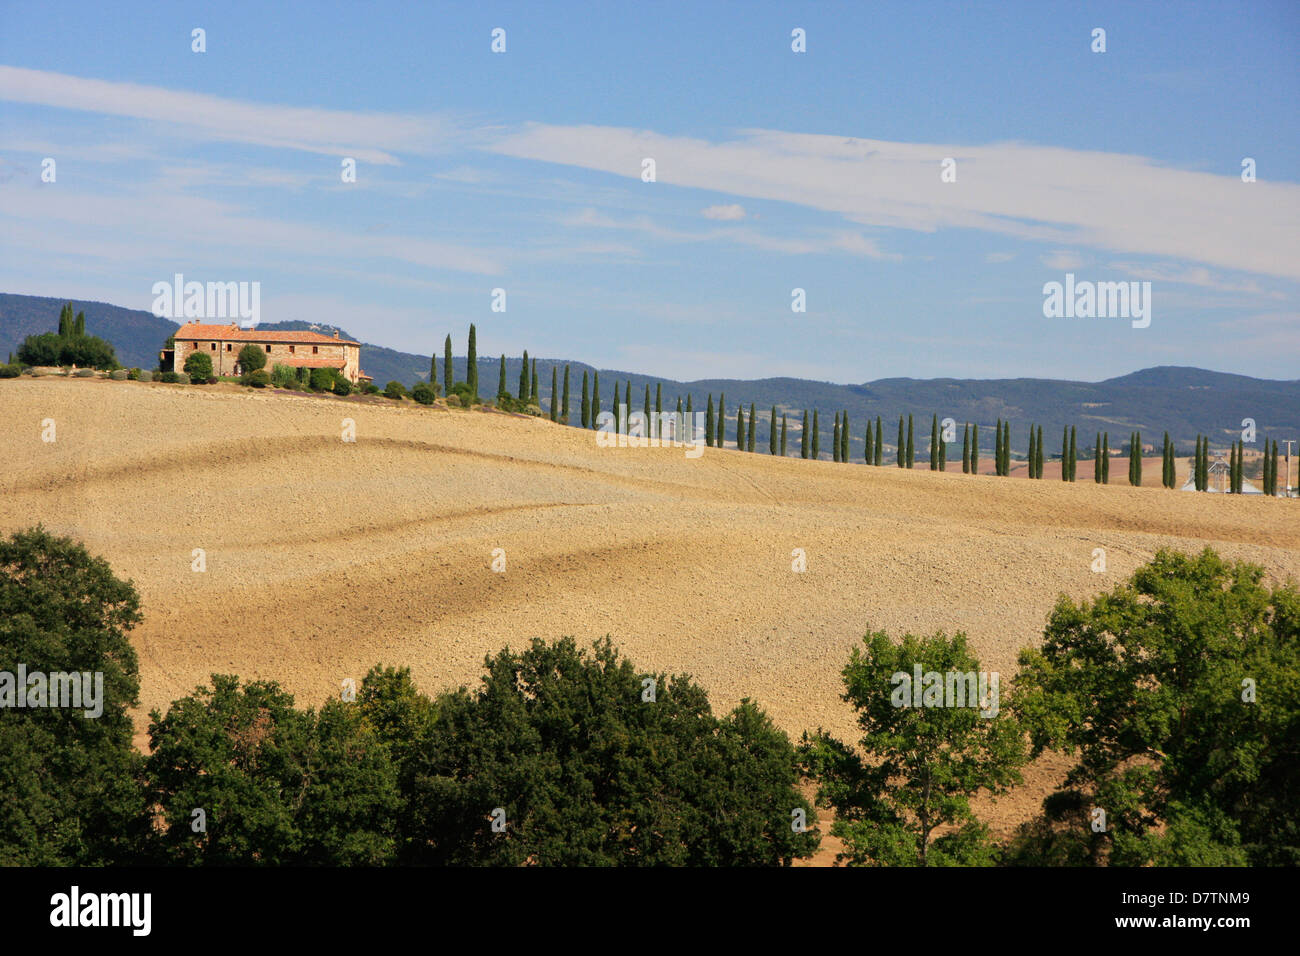 Country scene, Tuscany, Italy Stock Photo